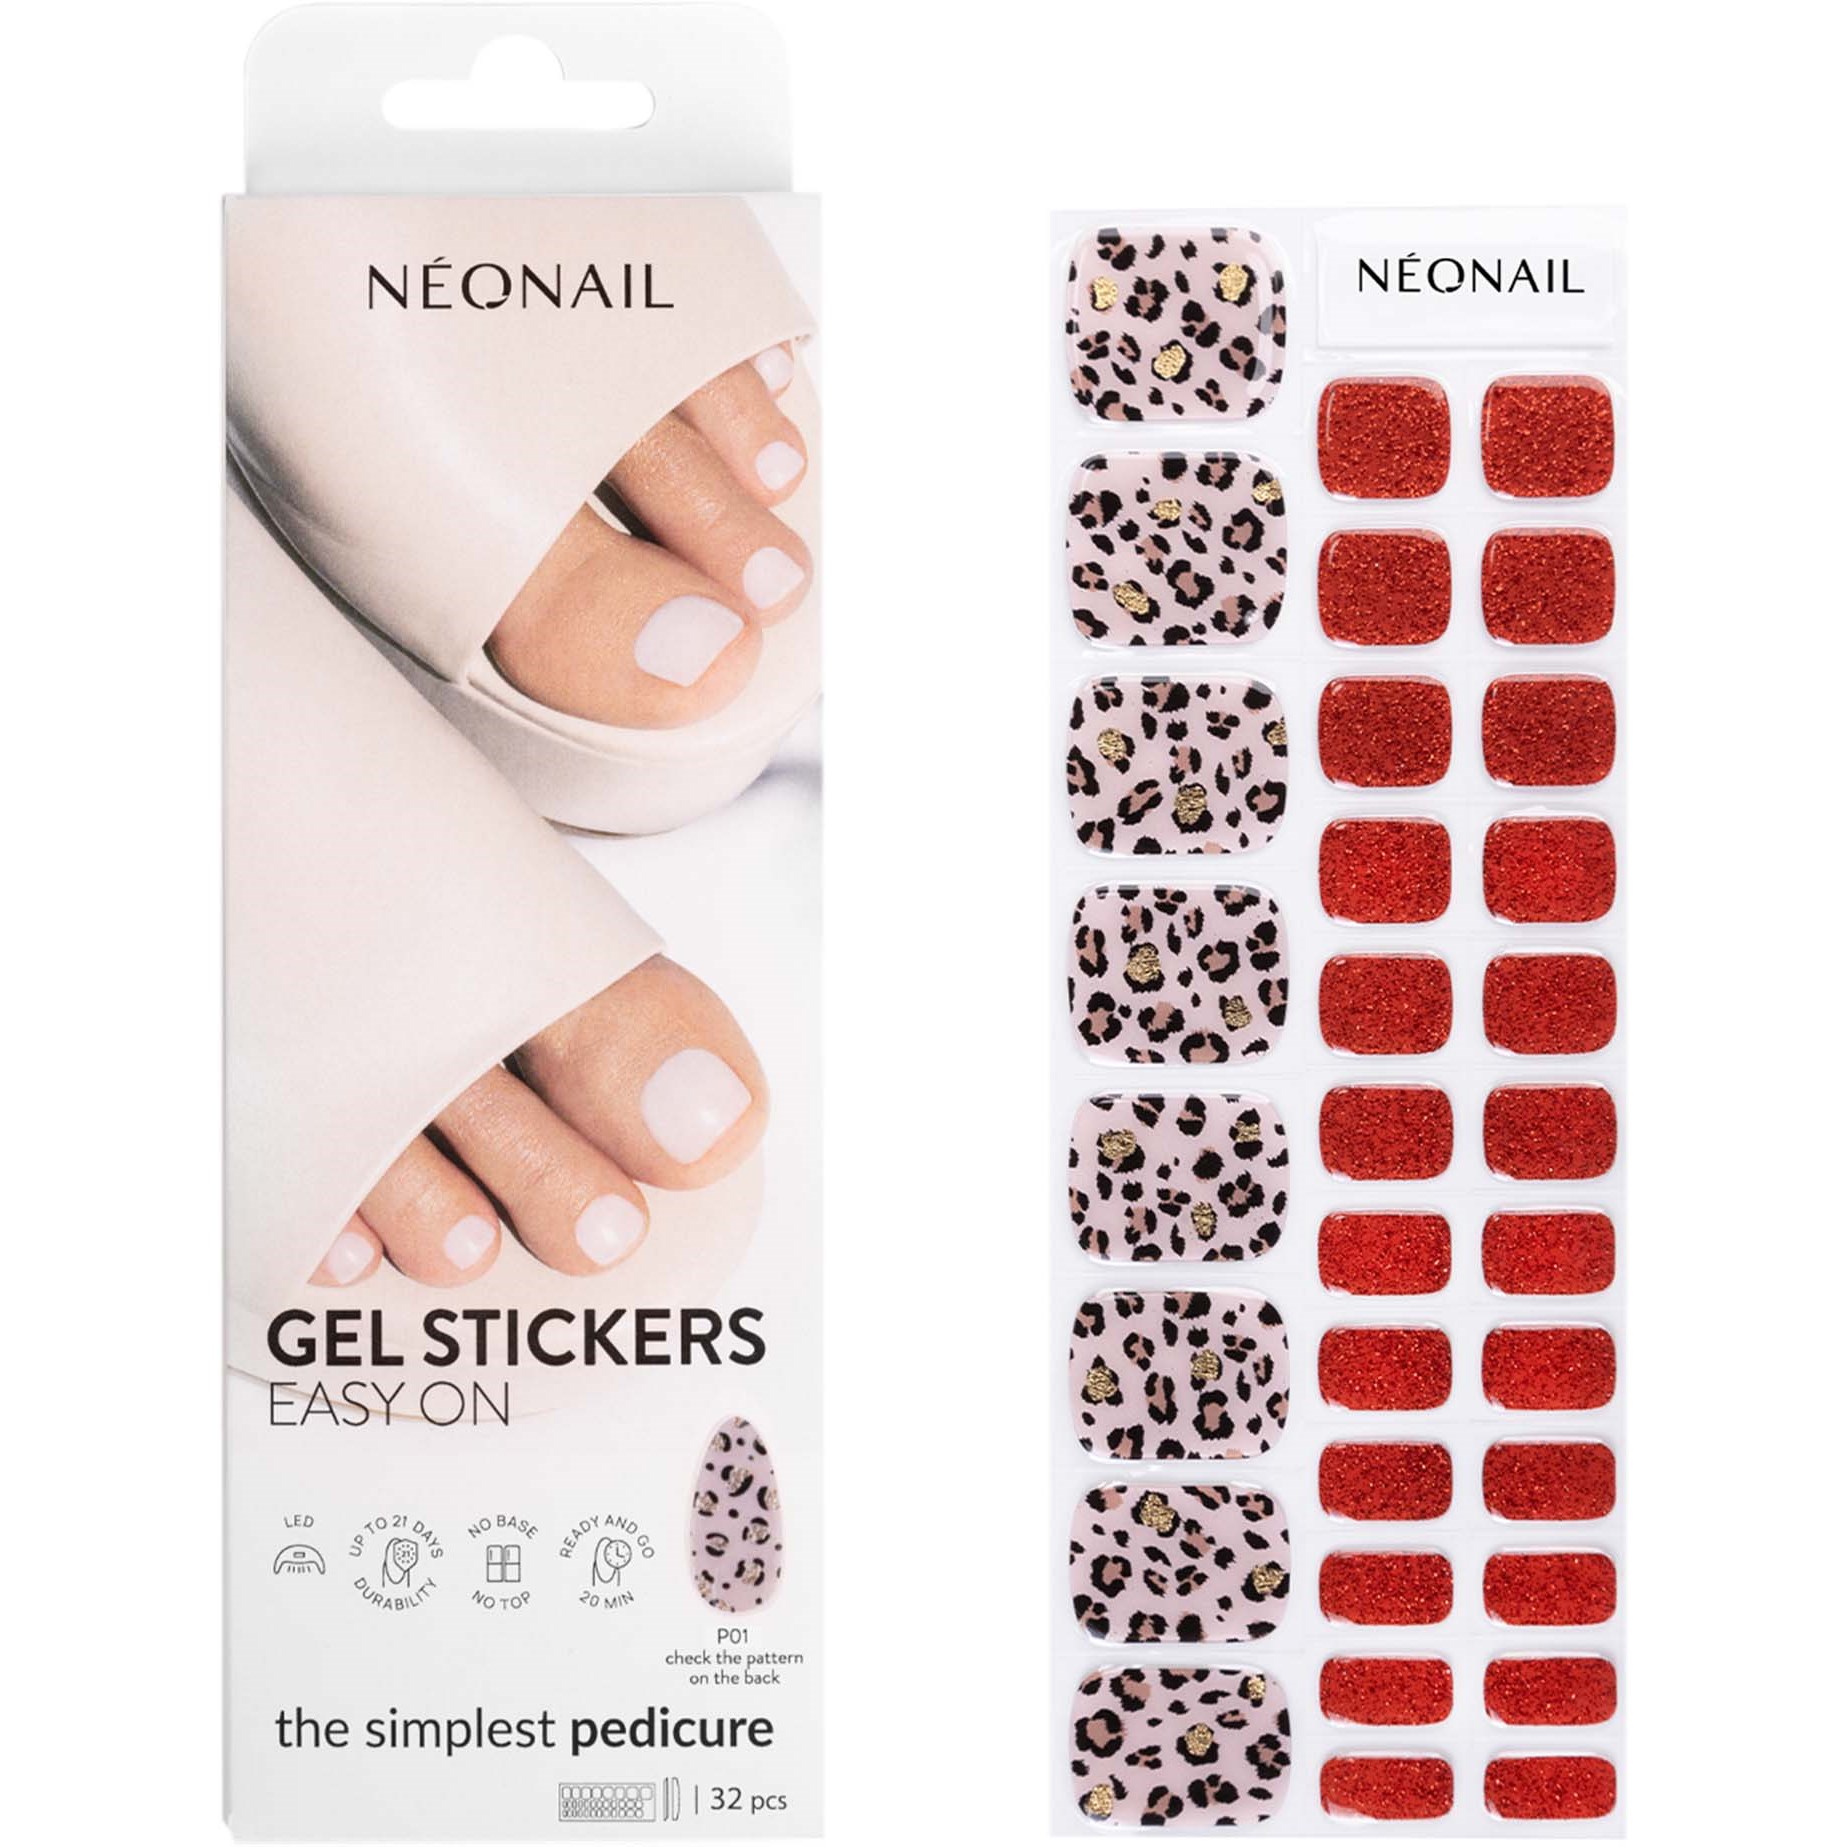 NEONAIL Gel Stickers Easy On